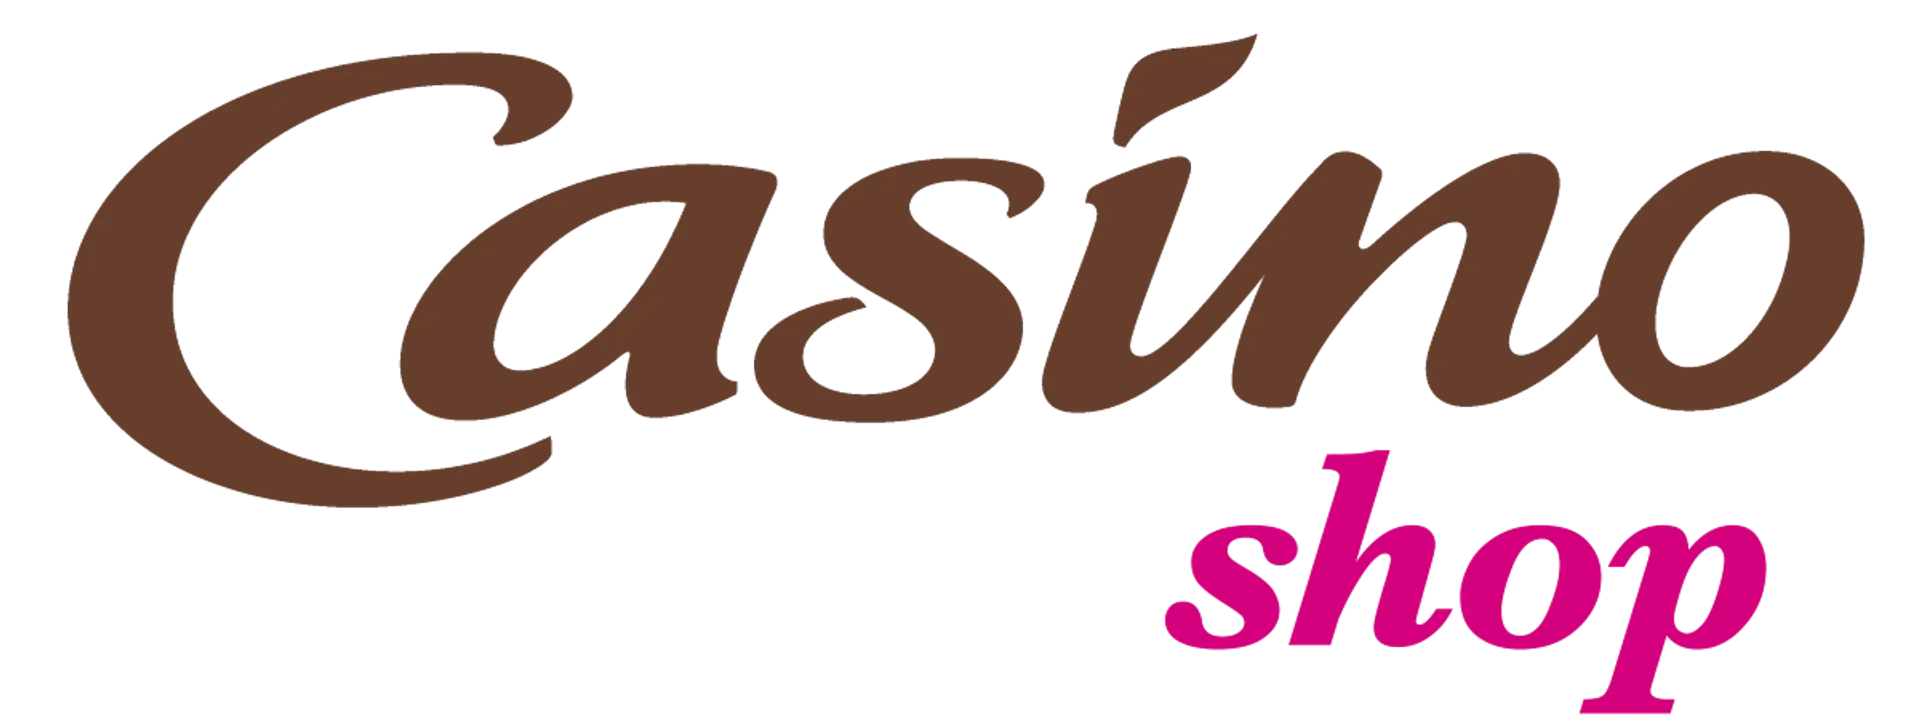 CASINO SHOP logo